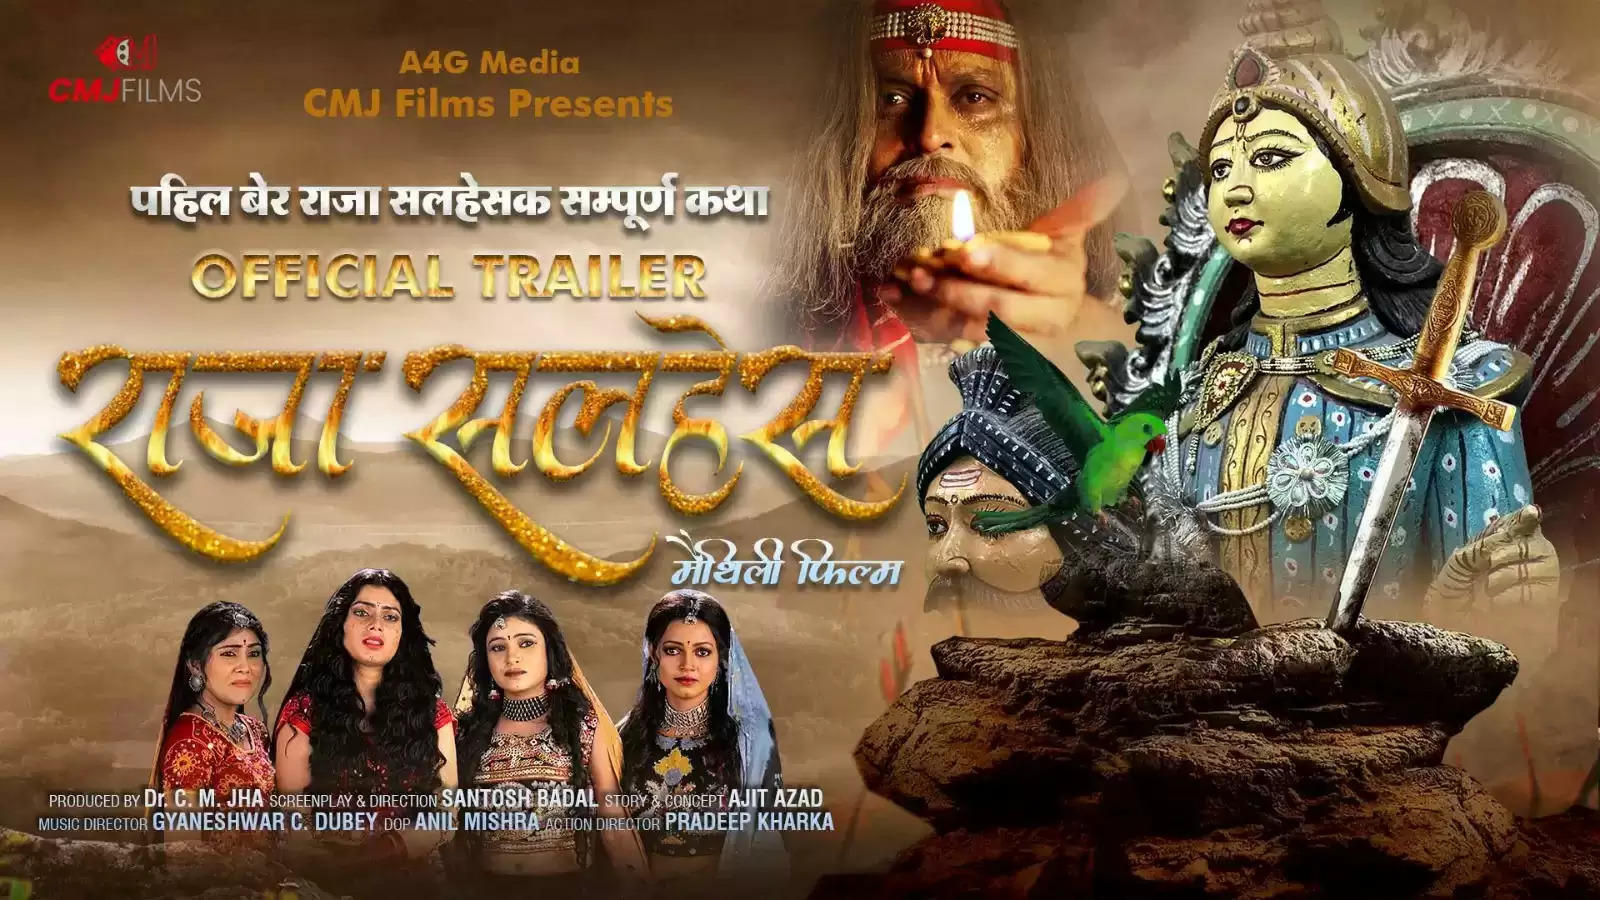 संतोष बादल लेकर आ रहे हैं मैथिली फिल्म "राजा सलहेस", 29 मार्च को होगी रिलीज